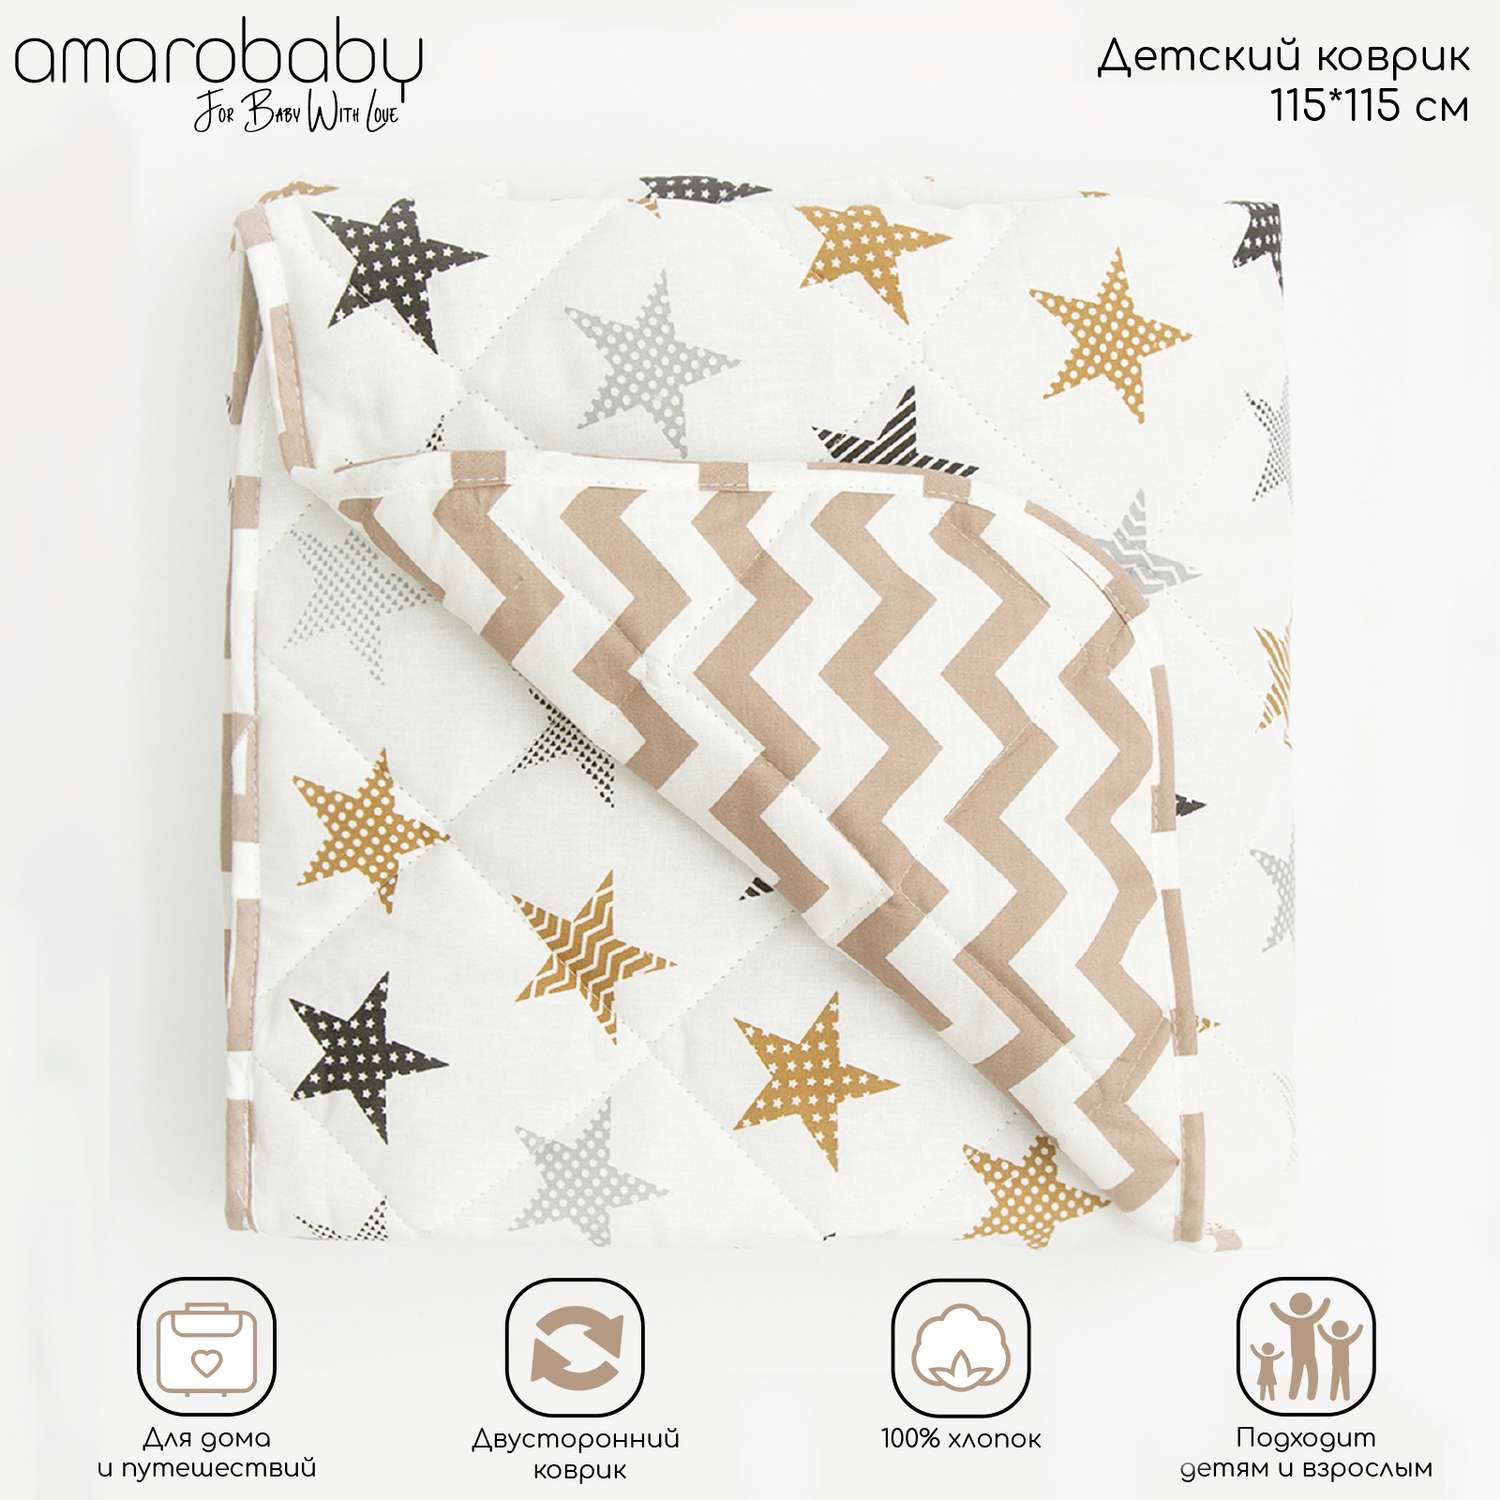 Коврик детский стёганный AmaroBaby Soft Mat 115х115 см Звёзды пэчворк коричневый - фото 2